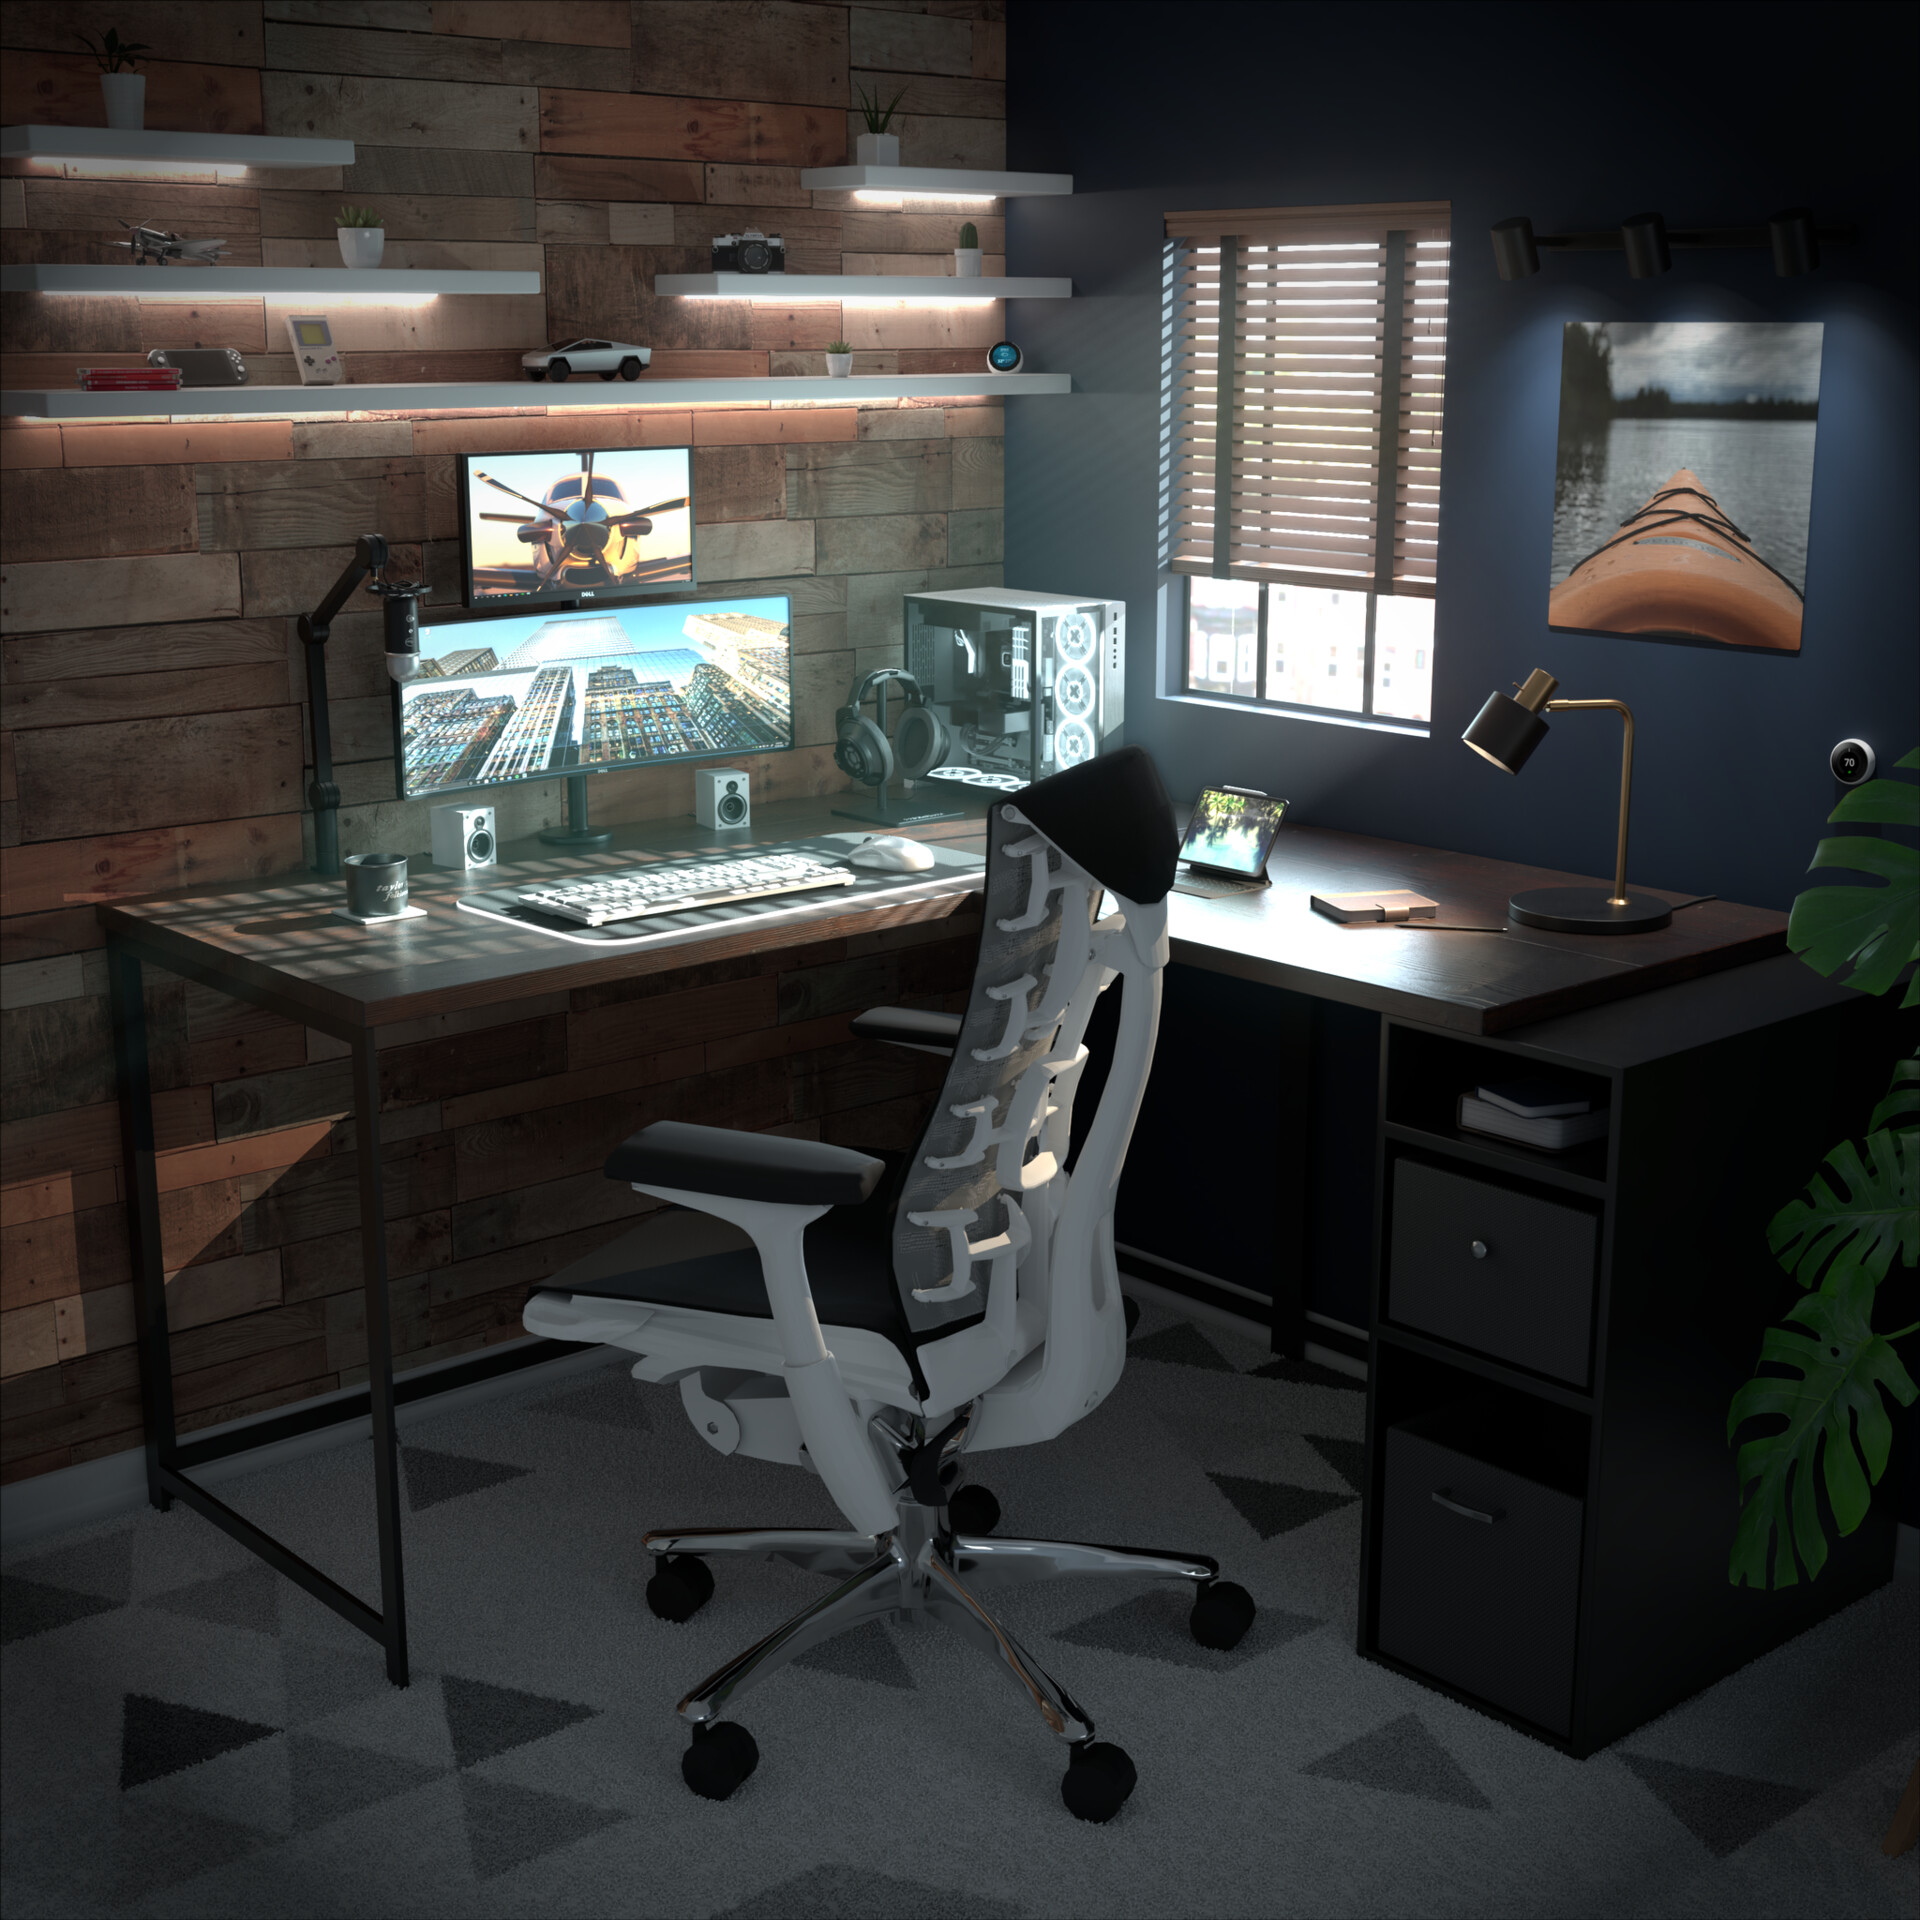 ArtStation - Desk Set-Up